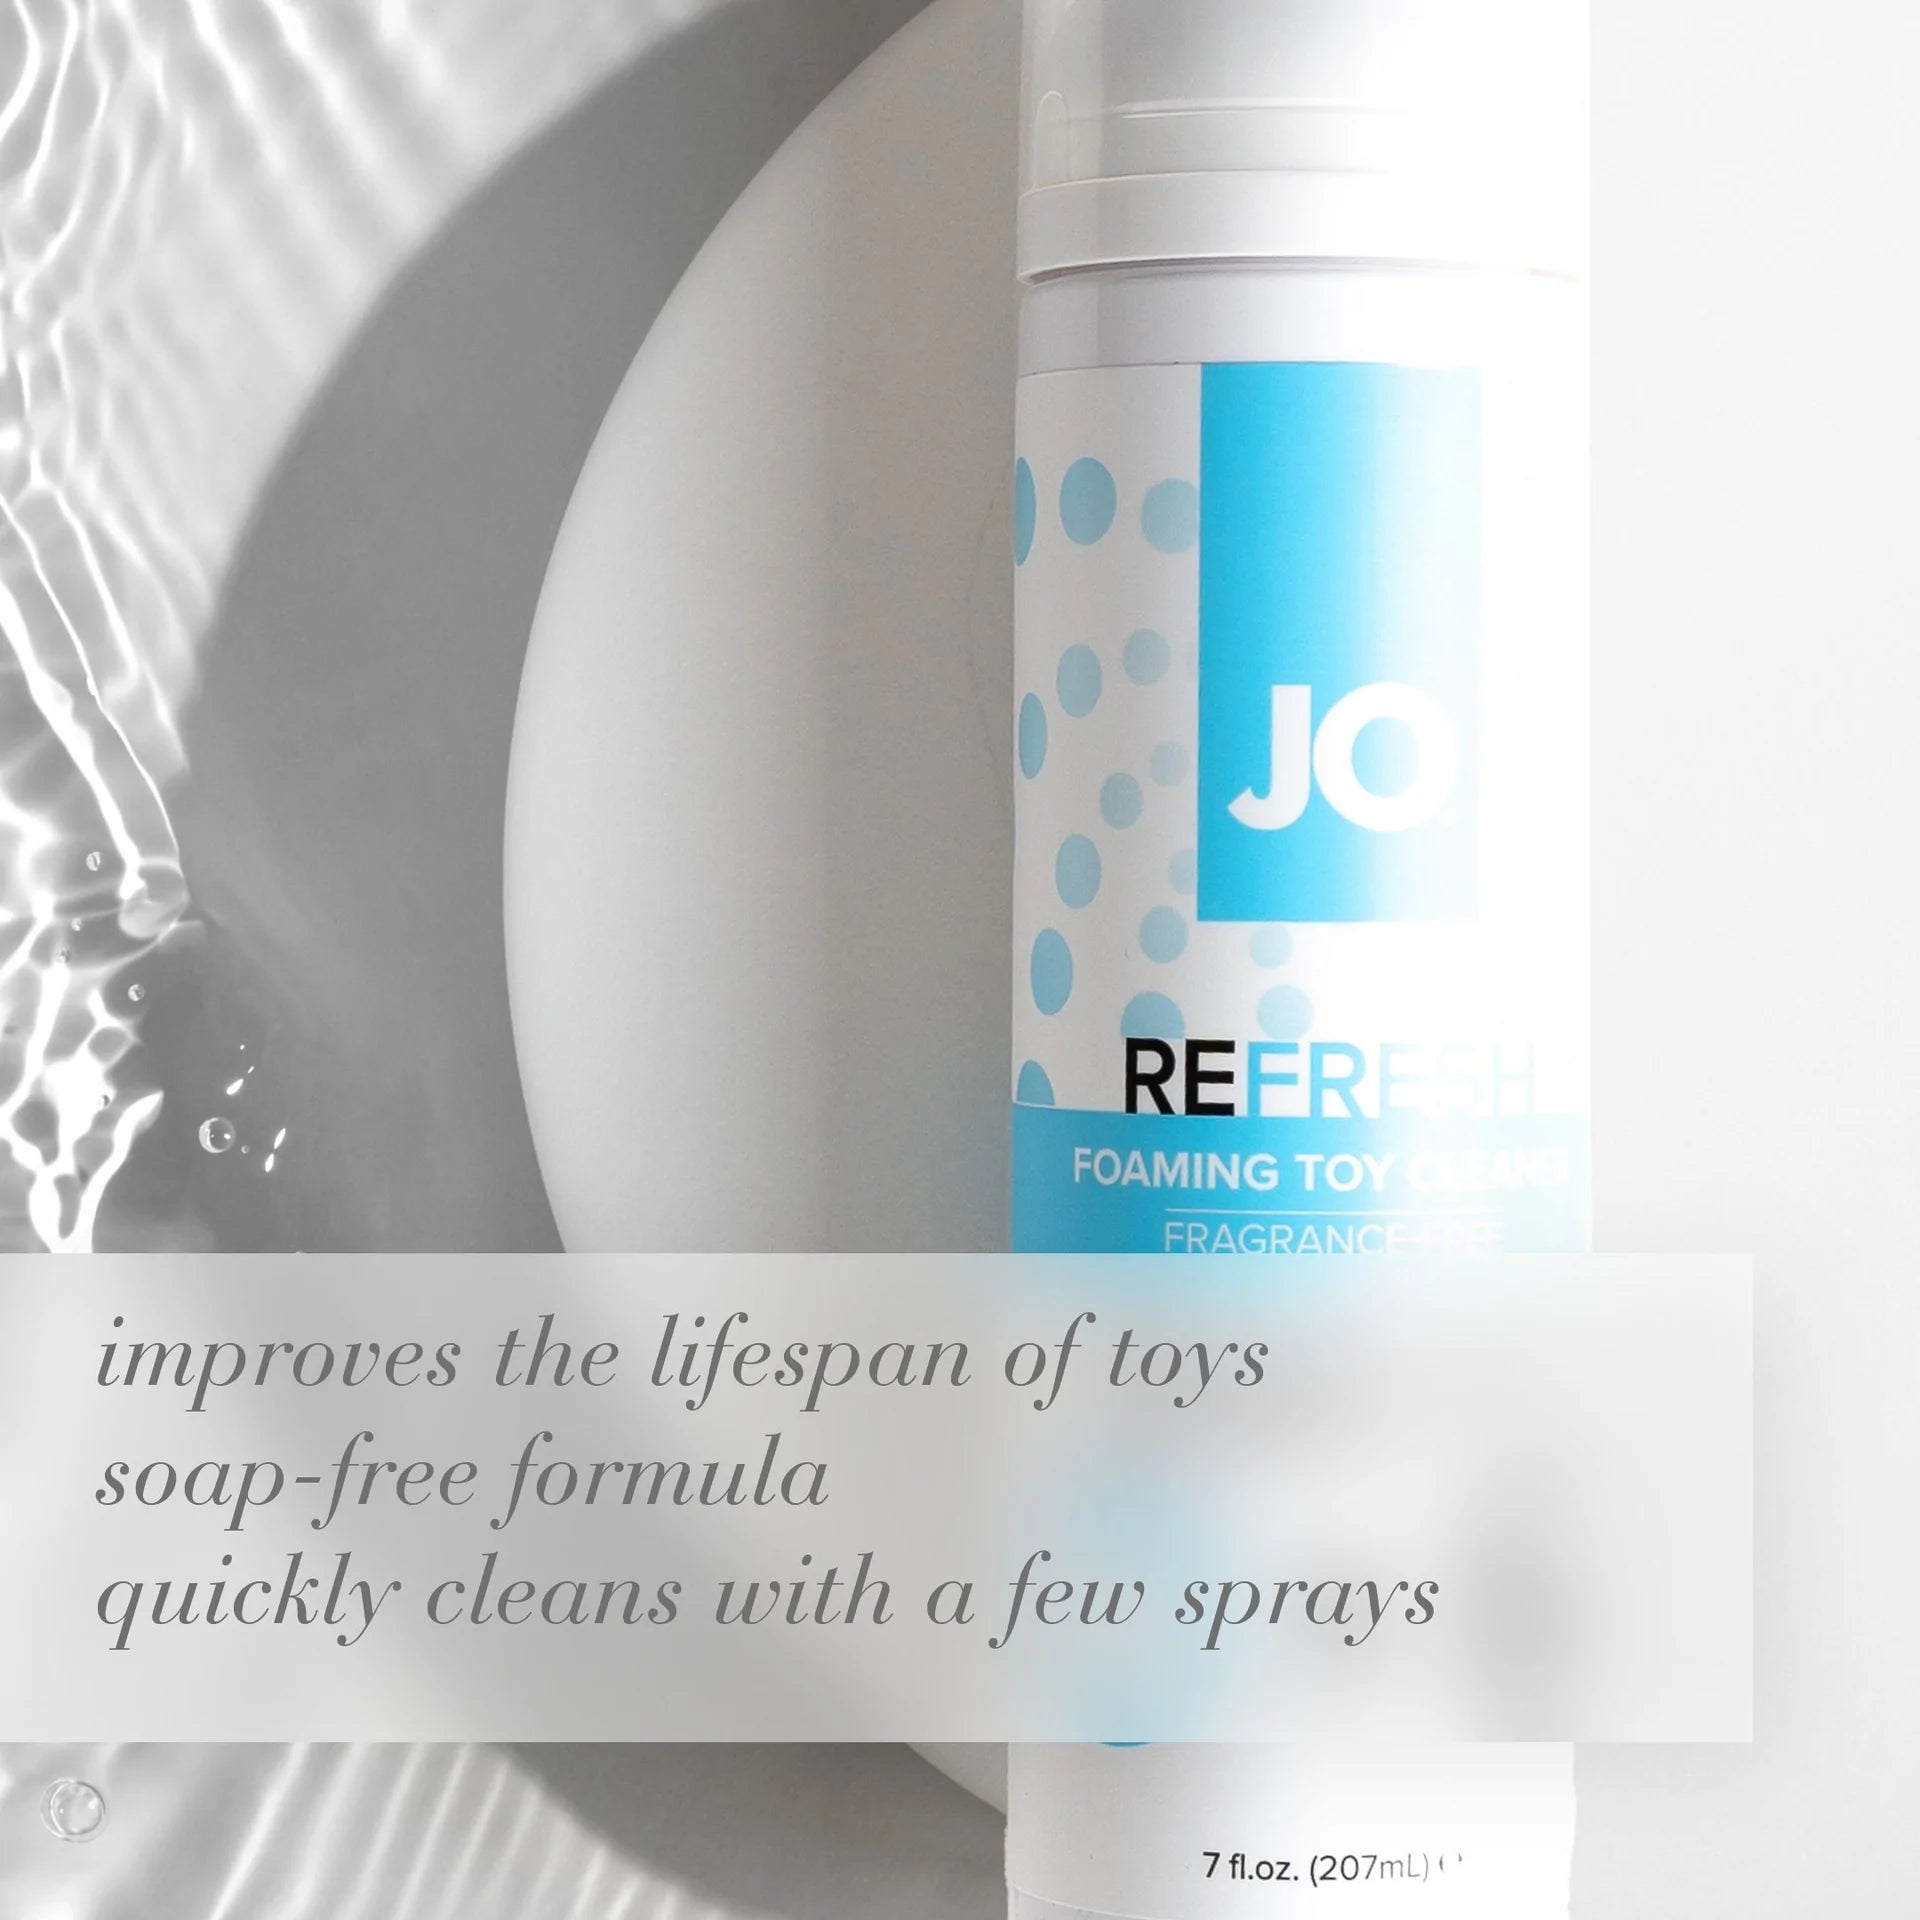 JO® Refresh Foaming Toy Cleaner - Rolik®